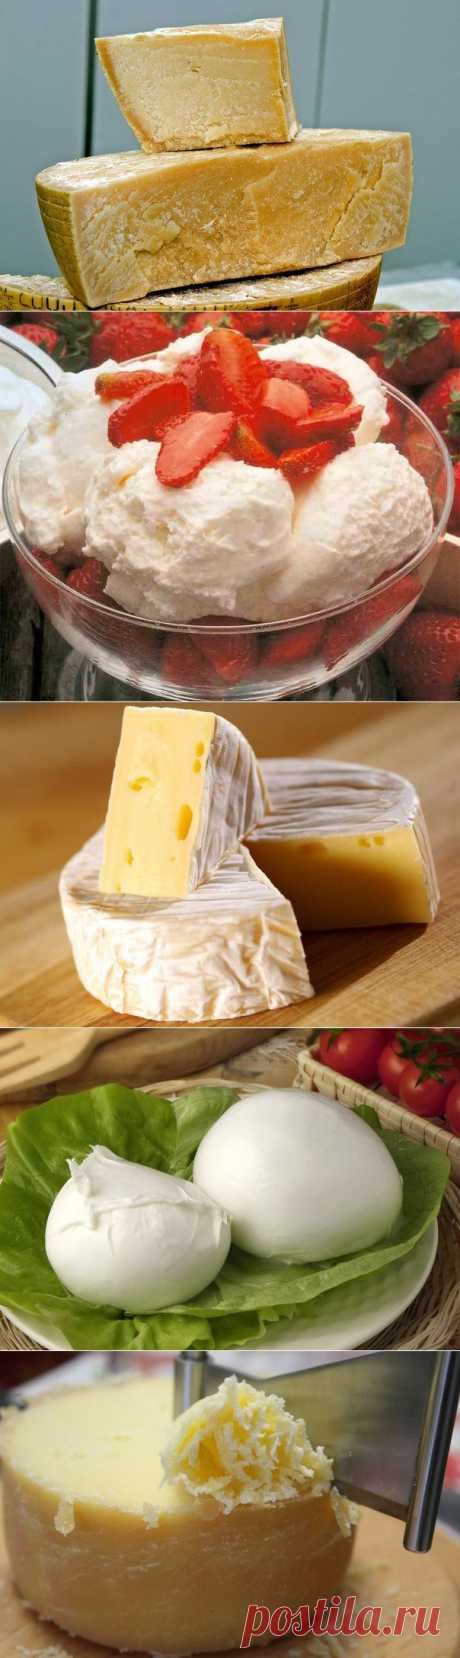 Топ-10 самых вкуснейших сыров в мире, которые нужно попробовать: | Готовим вместе